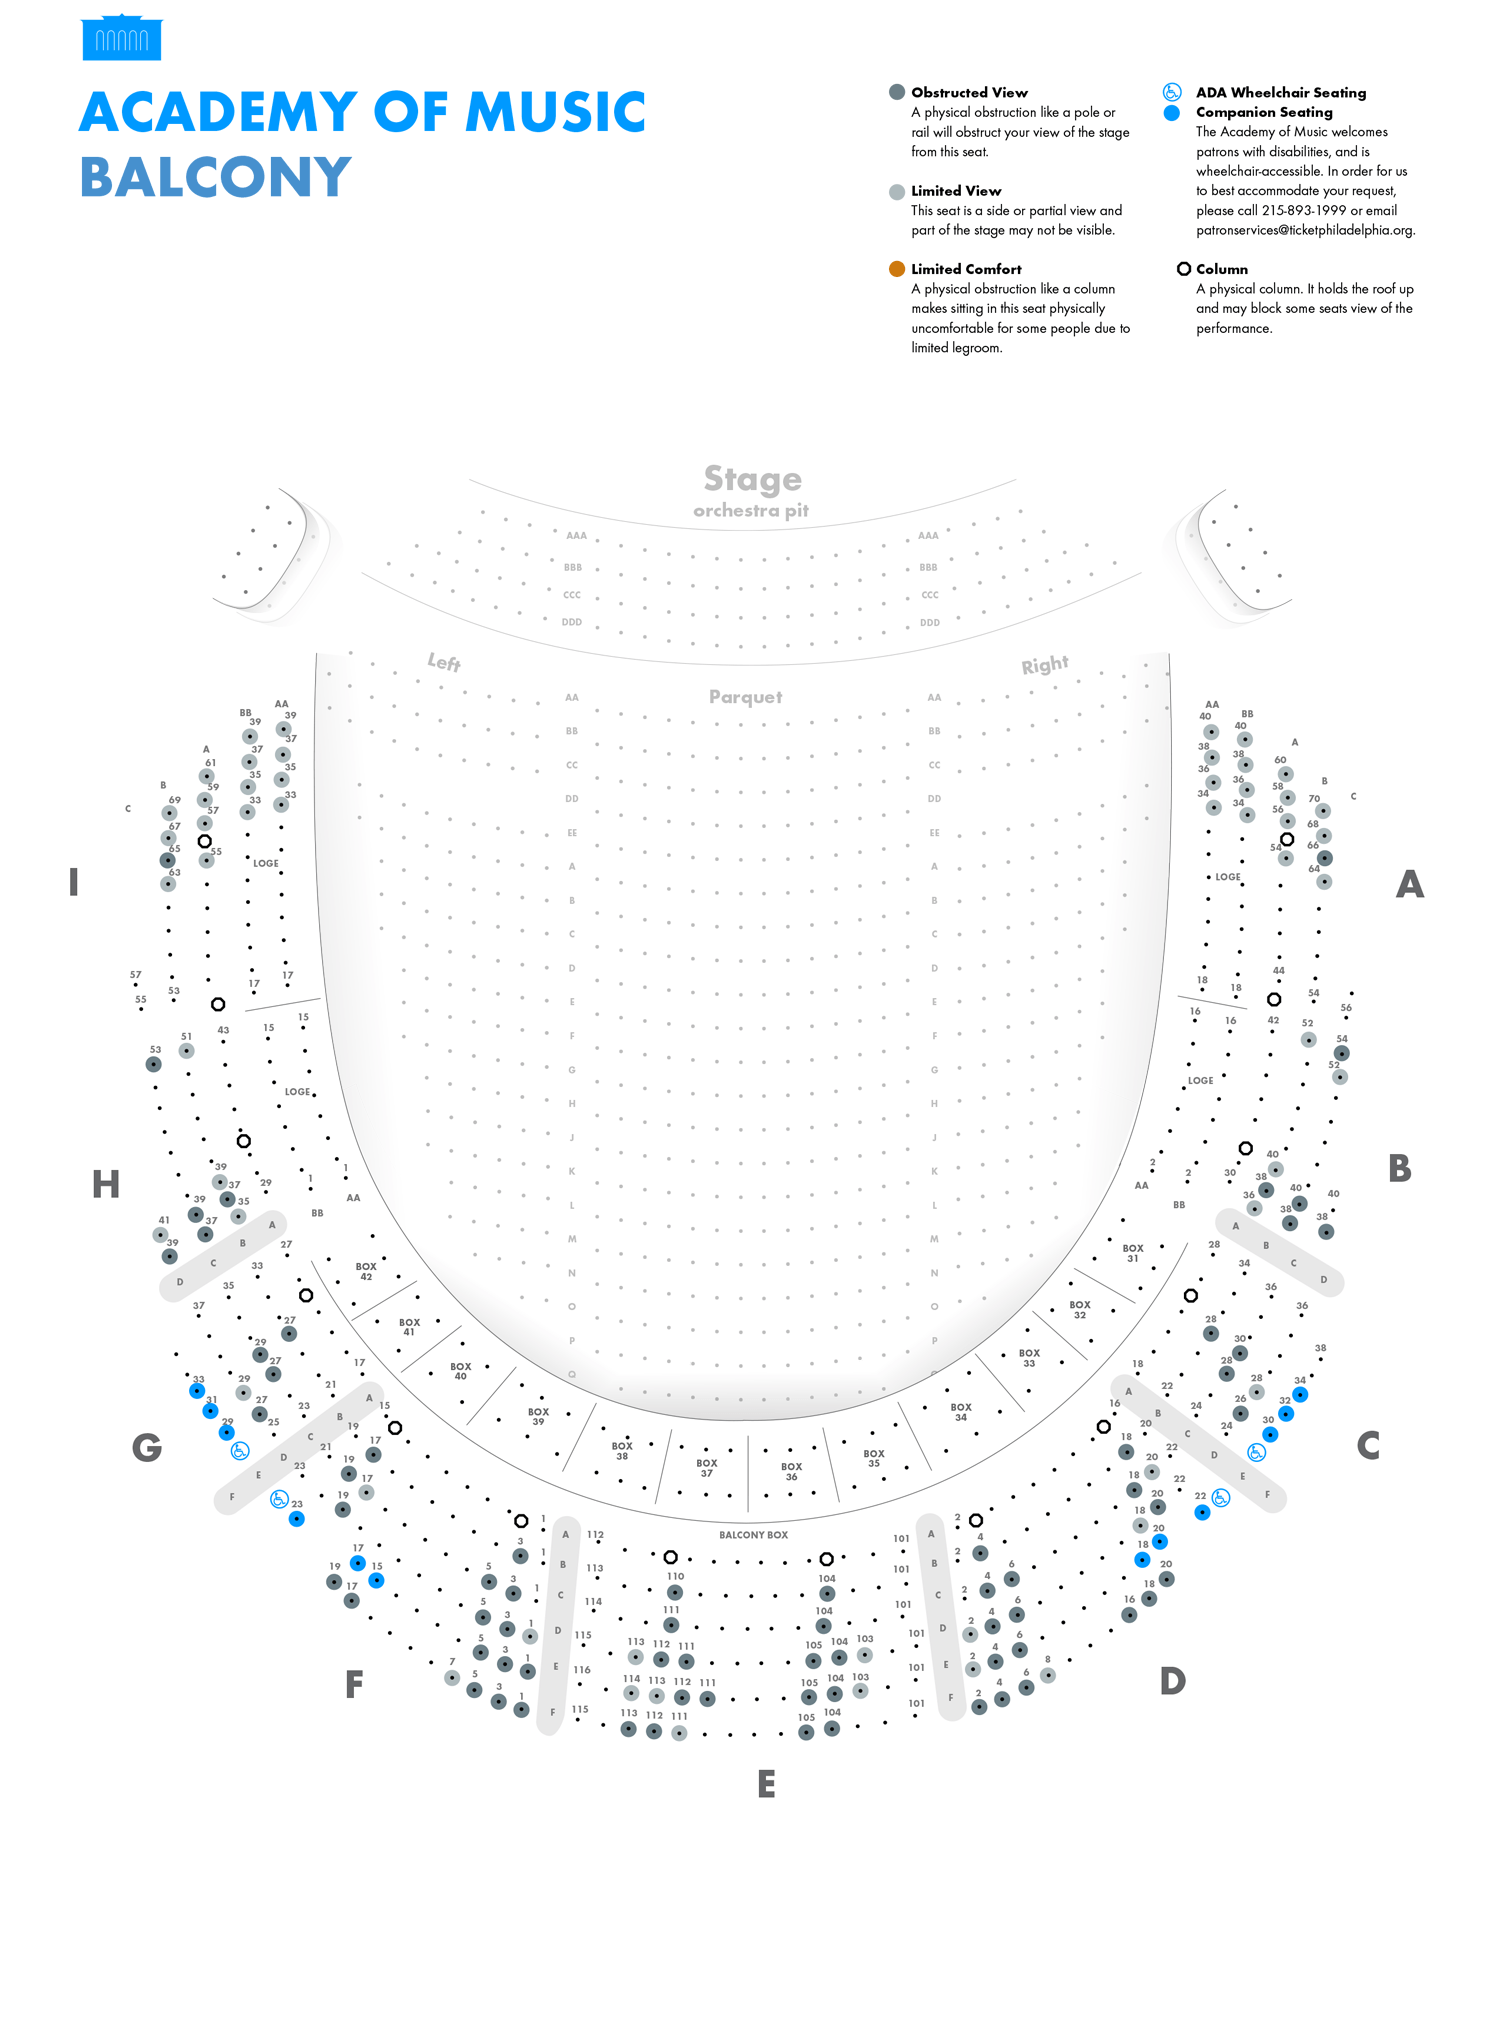 Academy Of Music Philadelphia Seating Chart